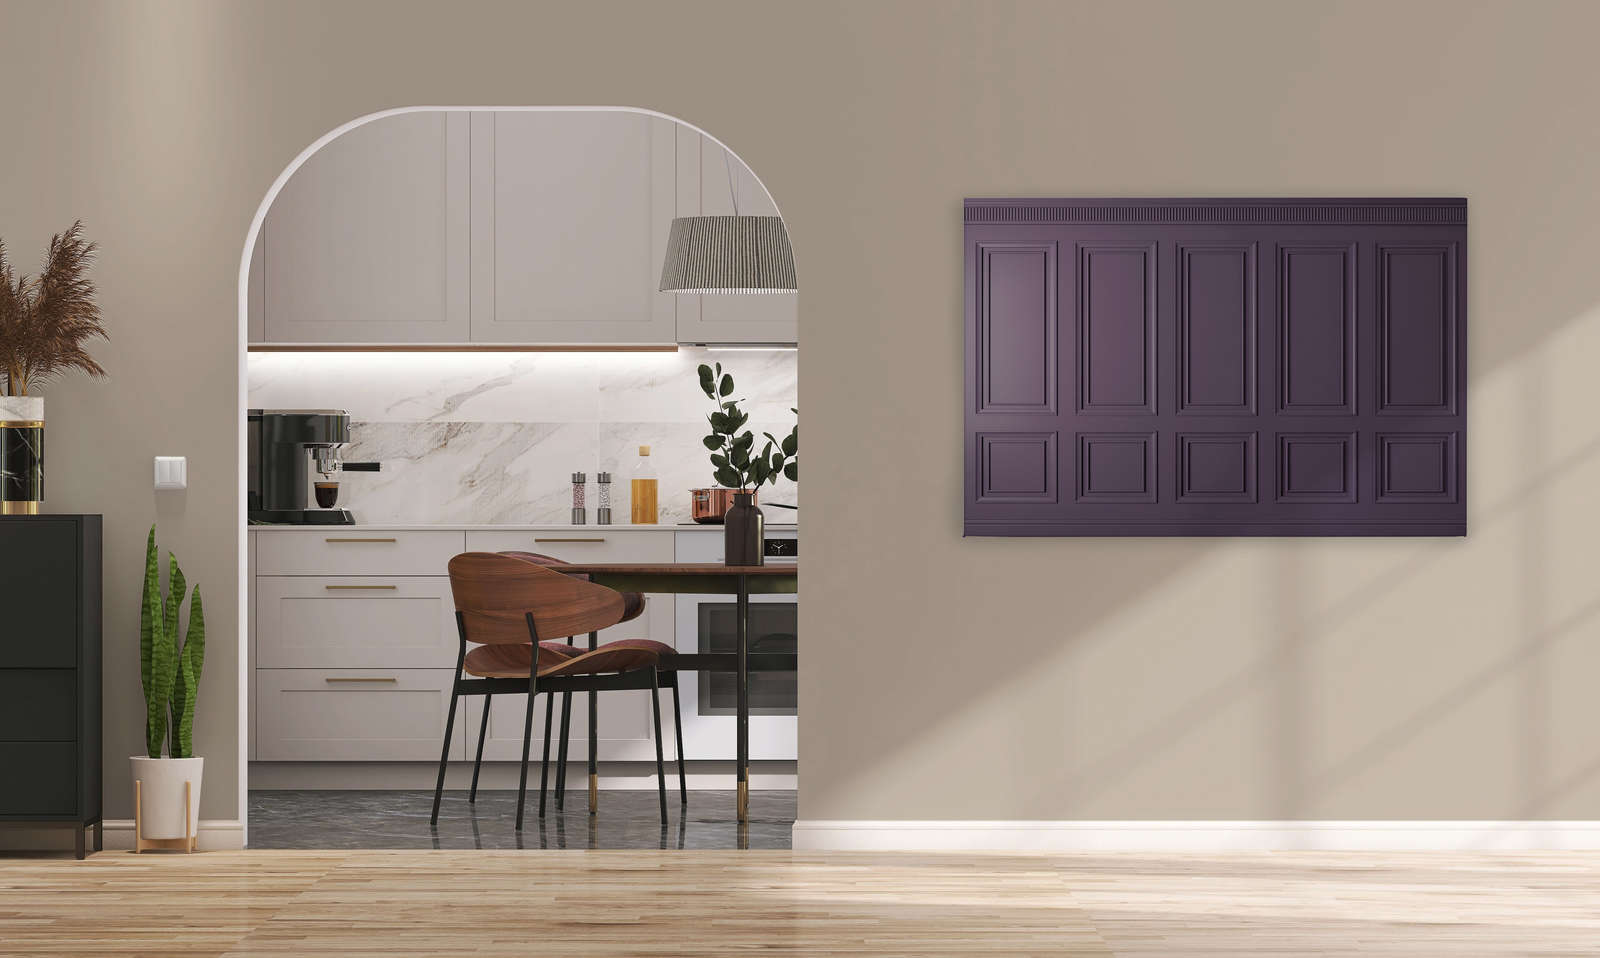             Kensington 3 - 3D Lienzo pintura paneles de madera púrpura oscuro, violeta - 1,20 m x 0,80 m
        